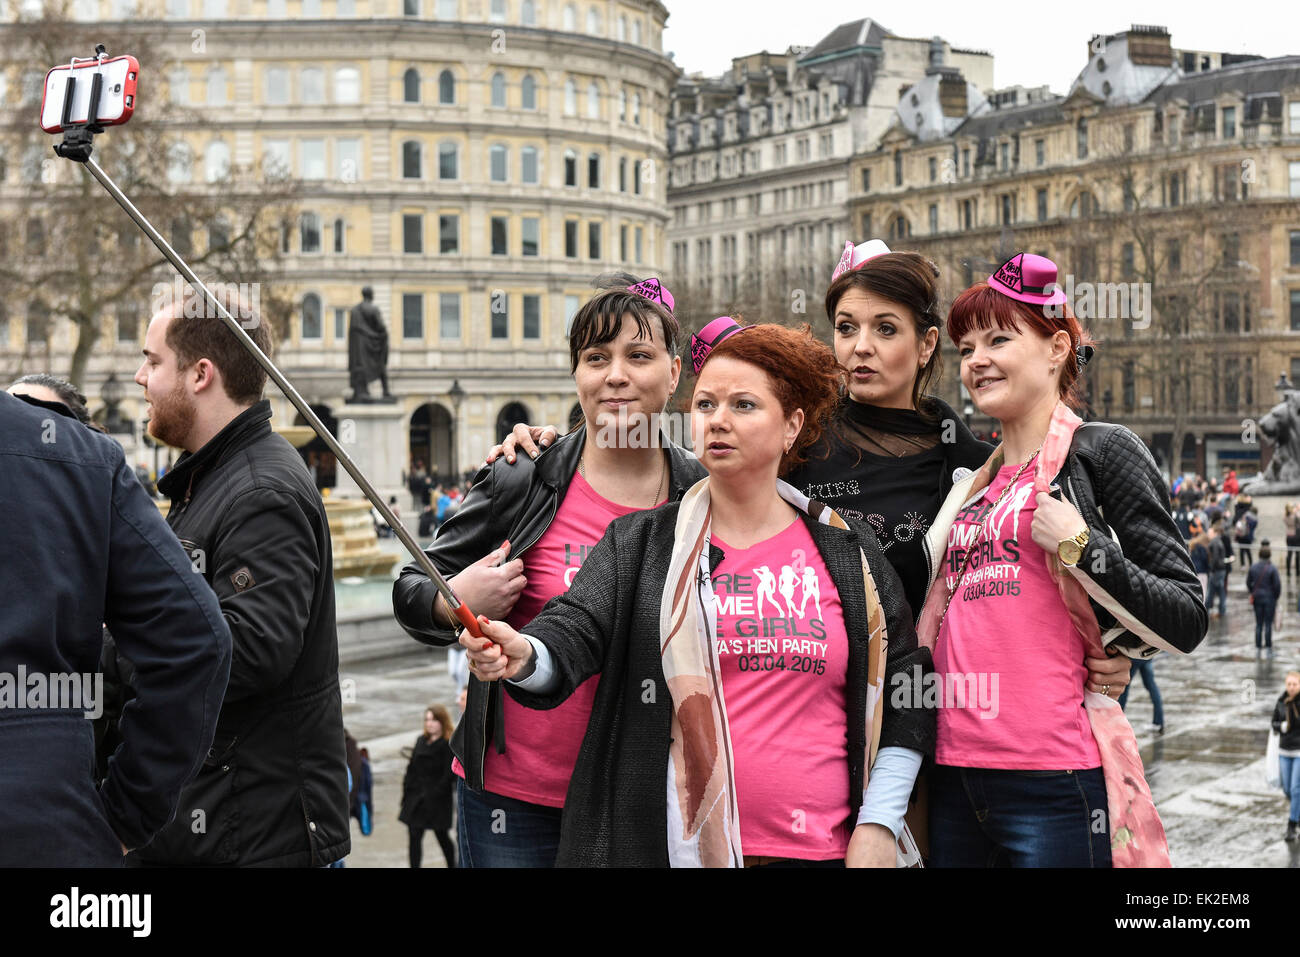 Women from a hen party taking a selfie in Trafalgar Square in London. Stock Photo